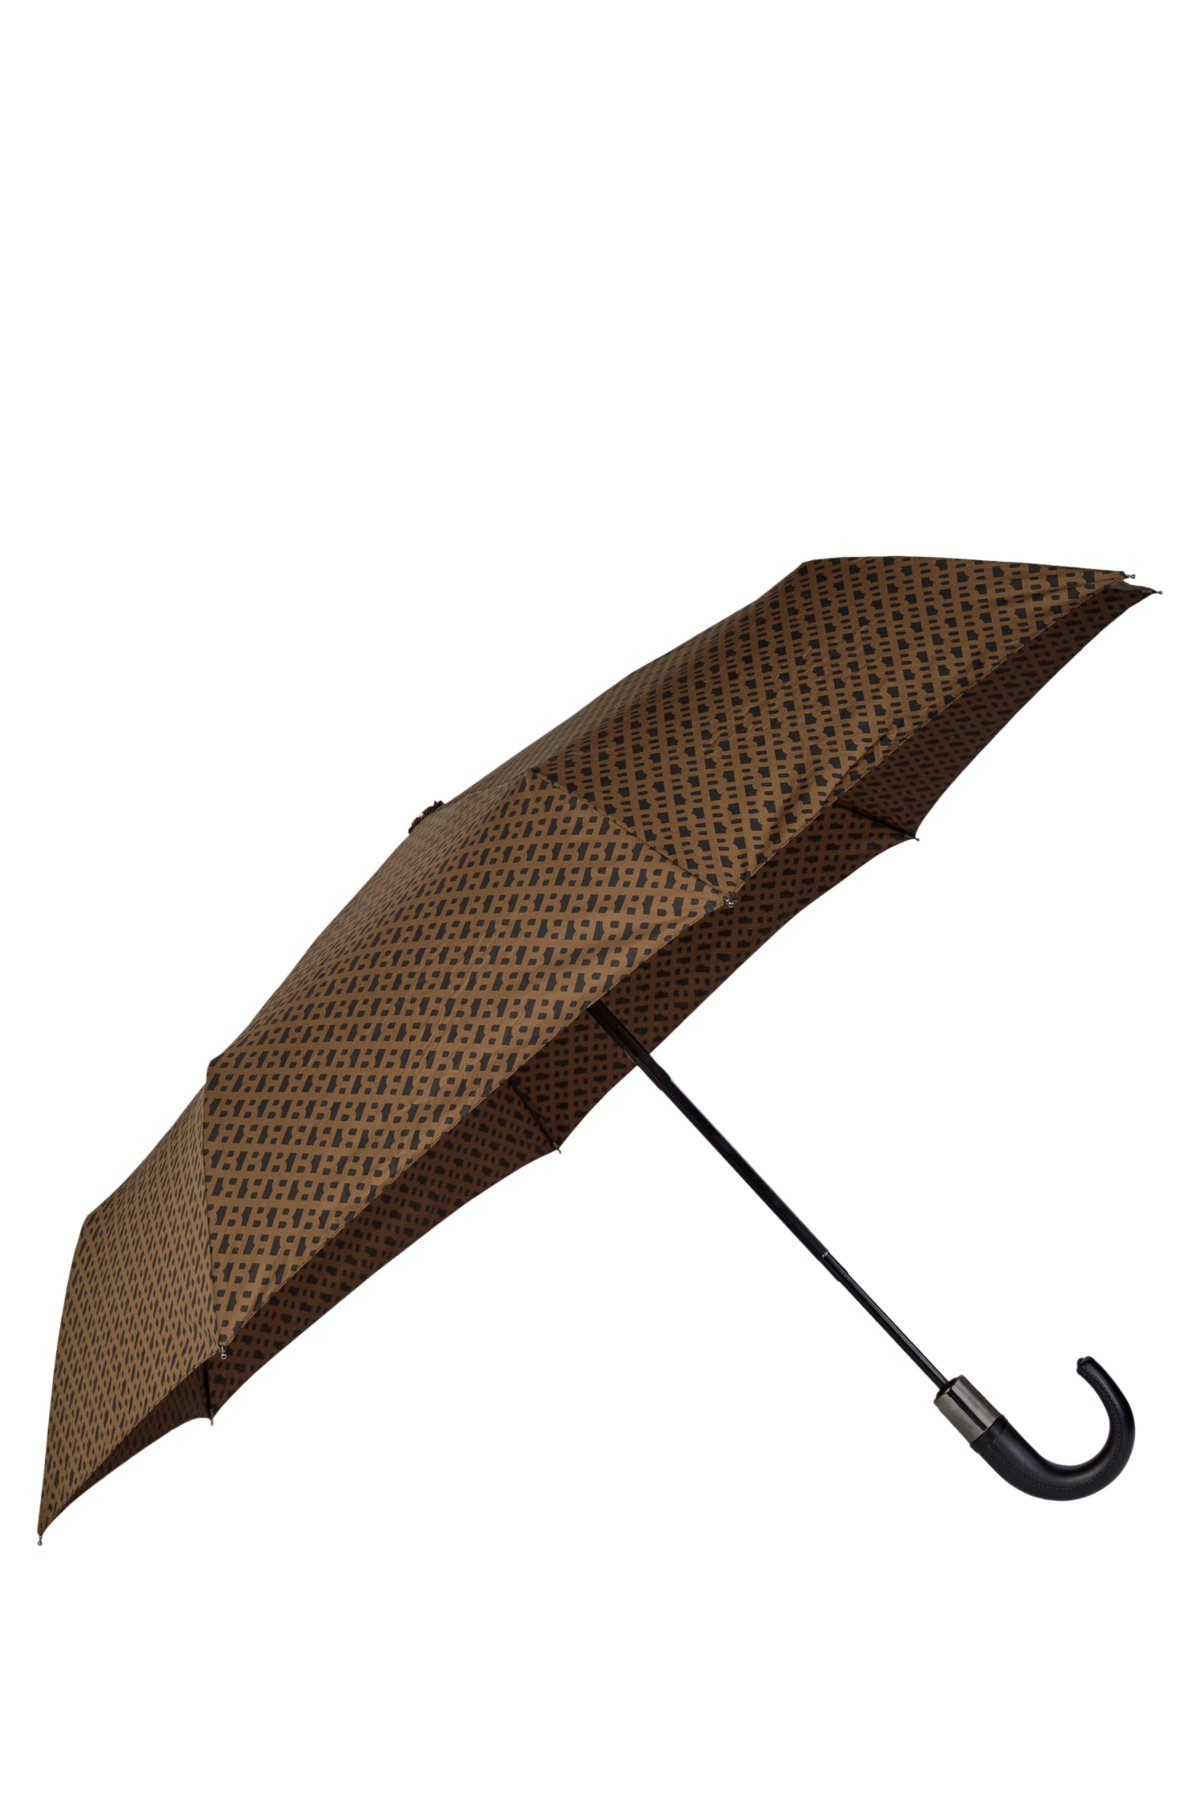 Umbrella Company Of Louis Vuitton